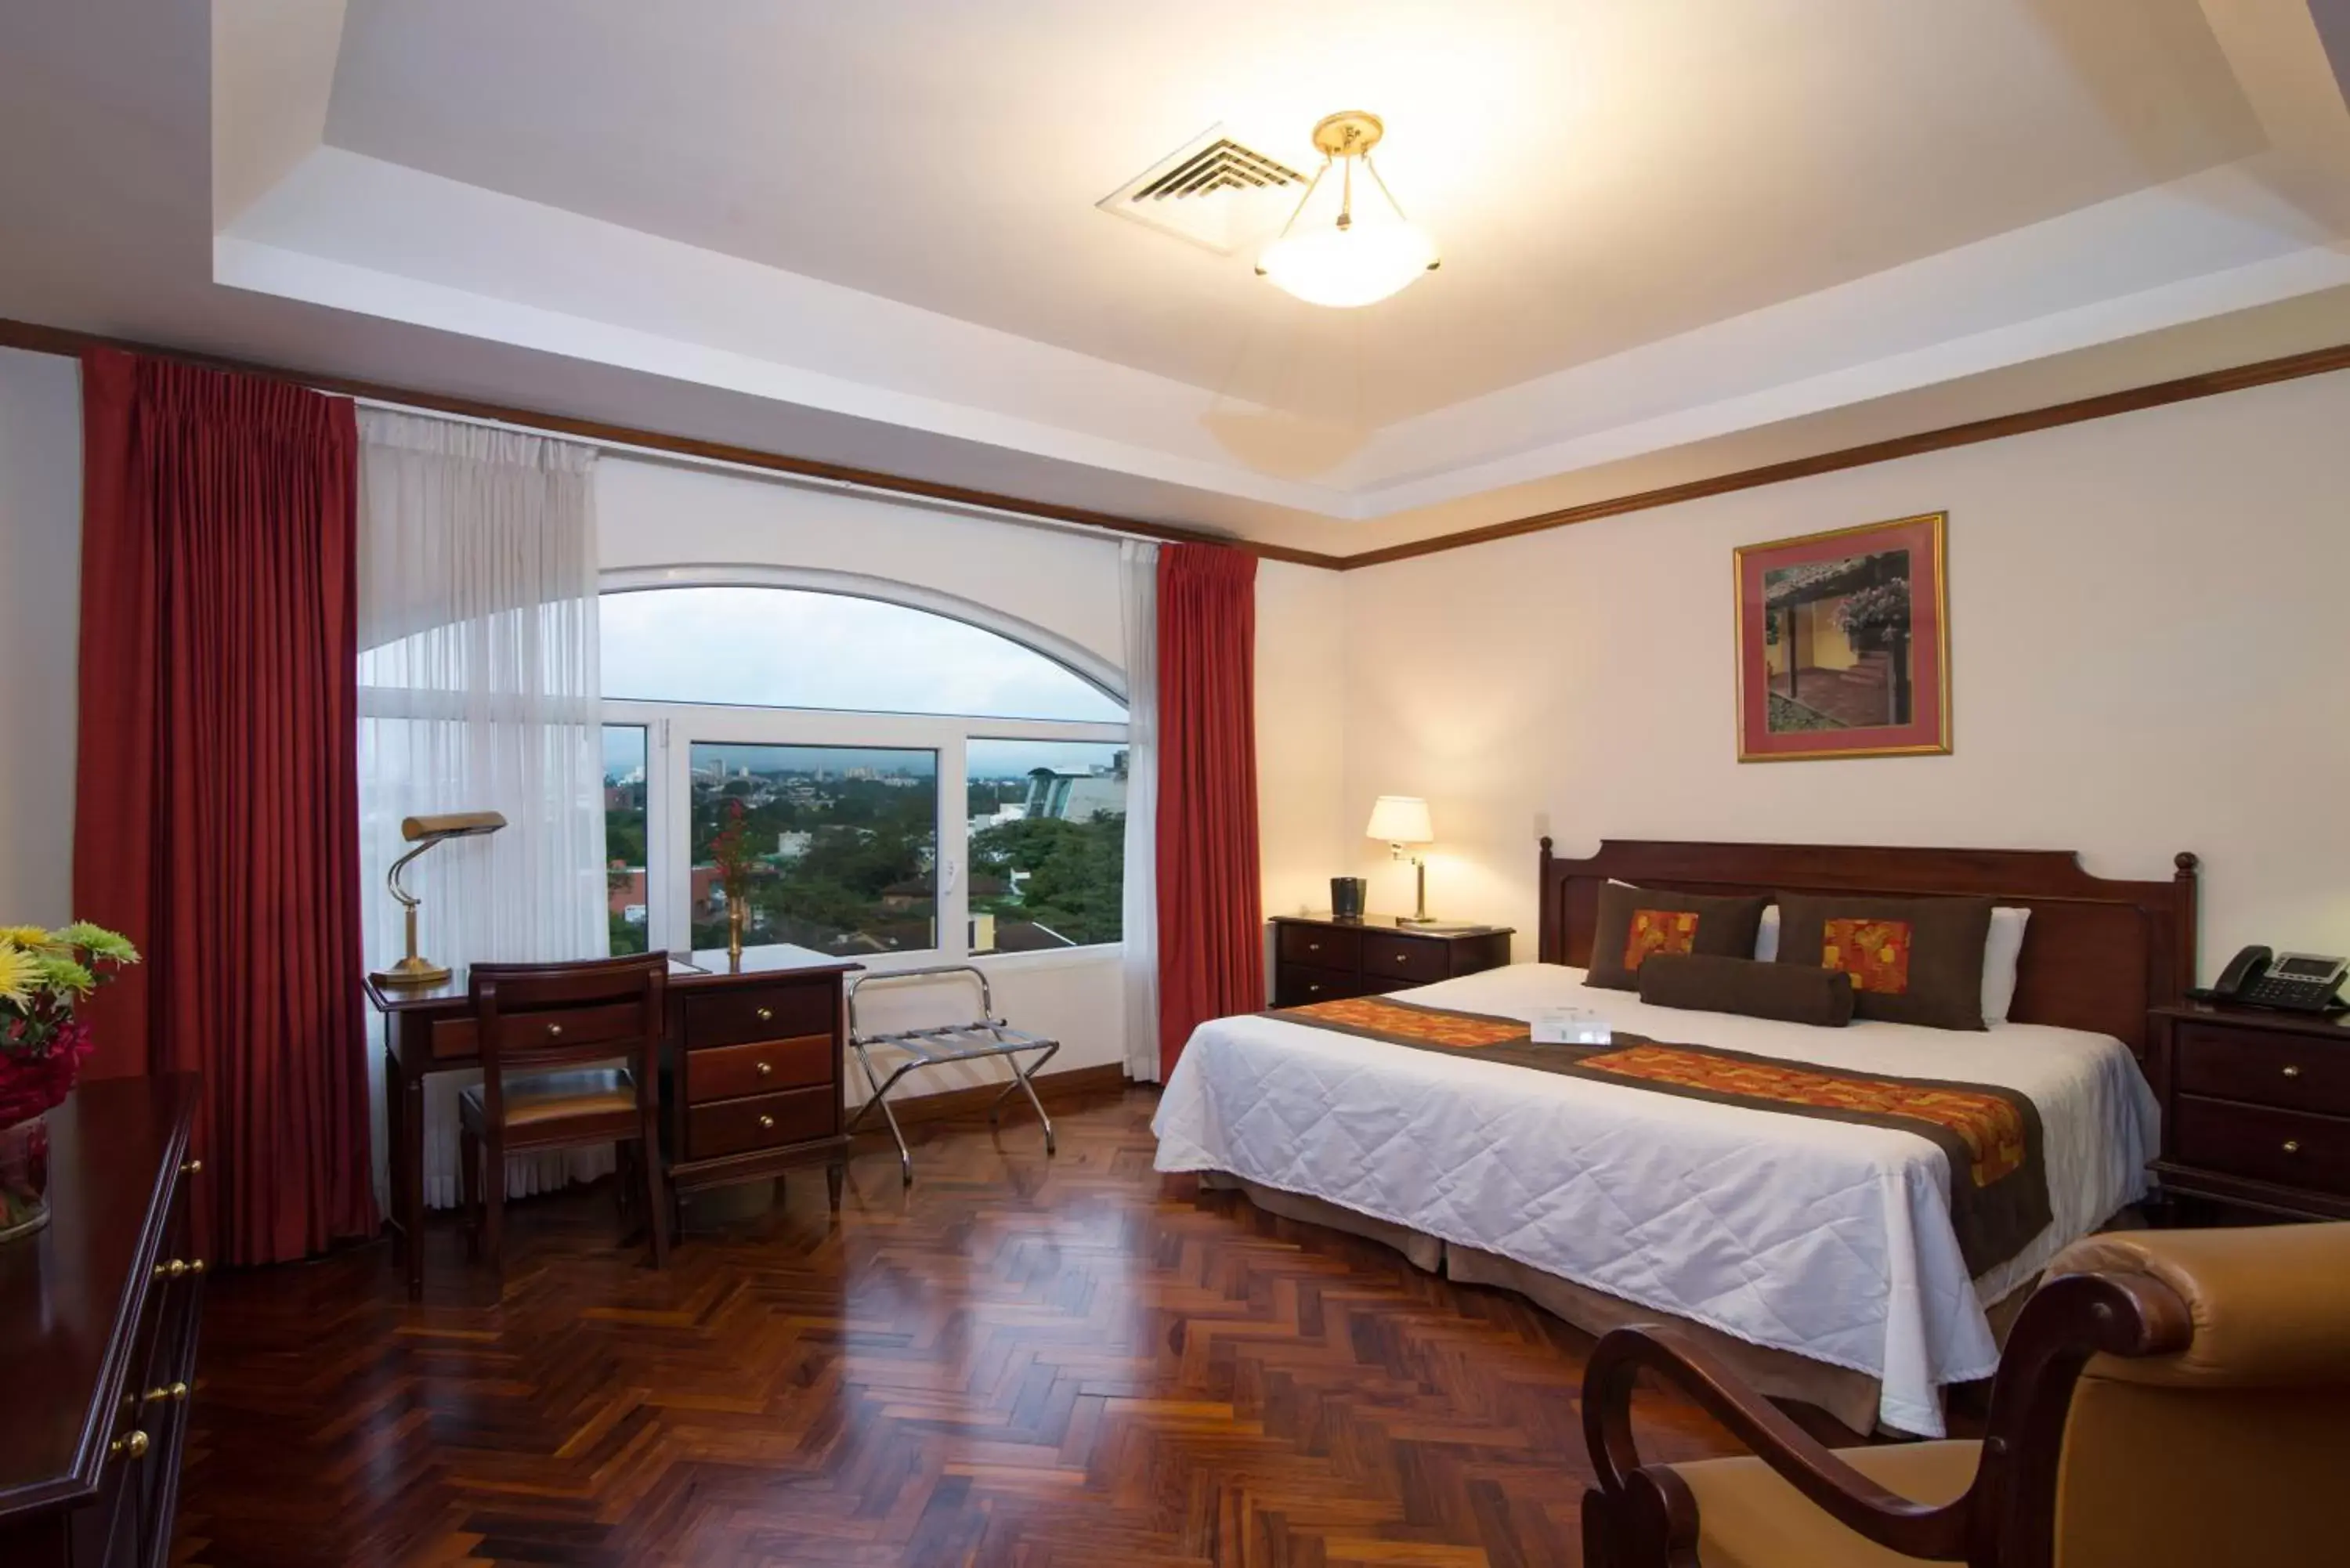 Bedroom, Room Photo in Apartotel & Suites Villas del Rio